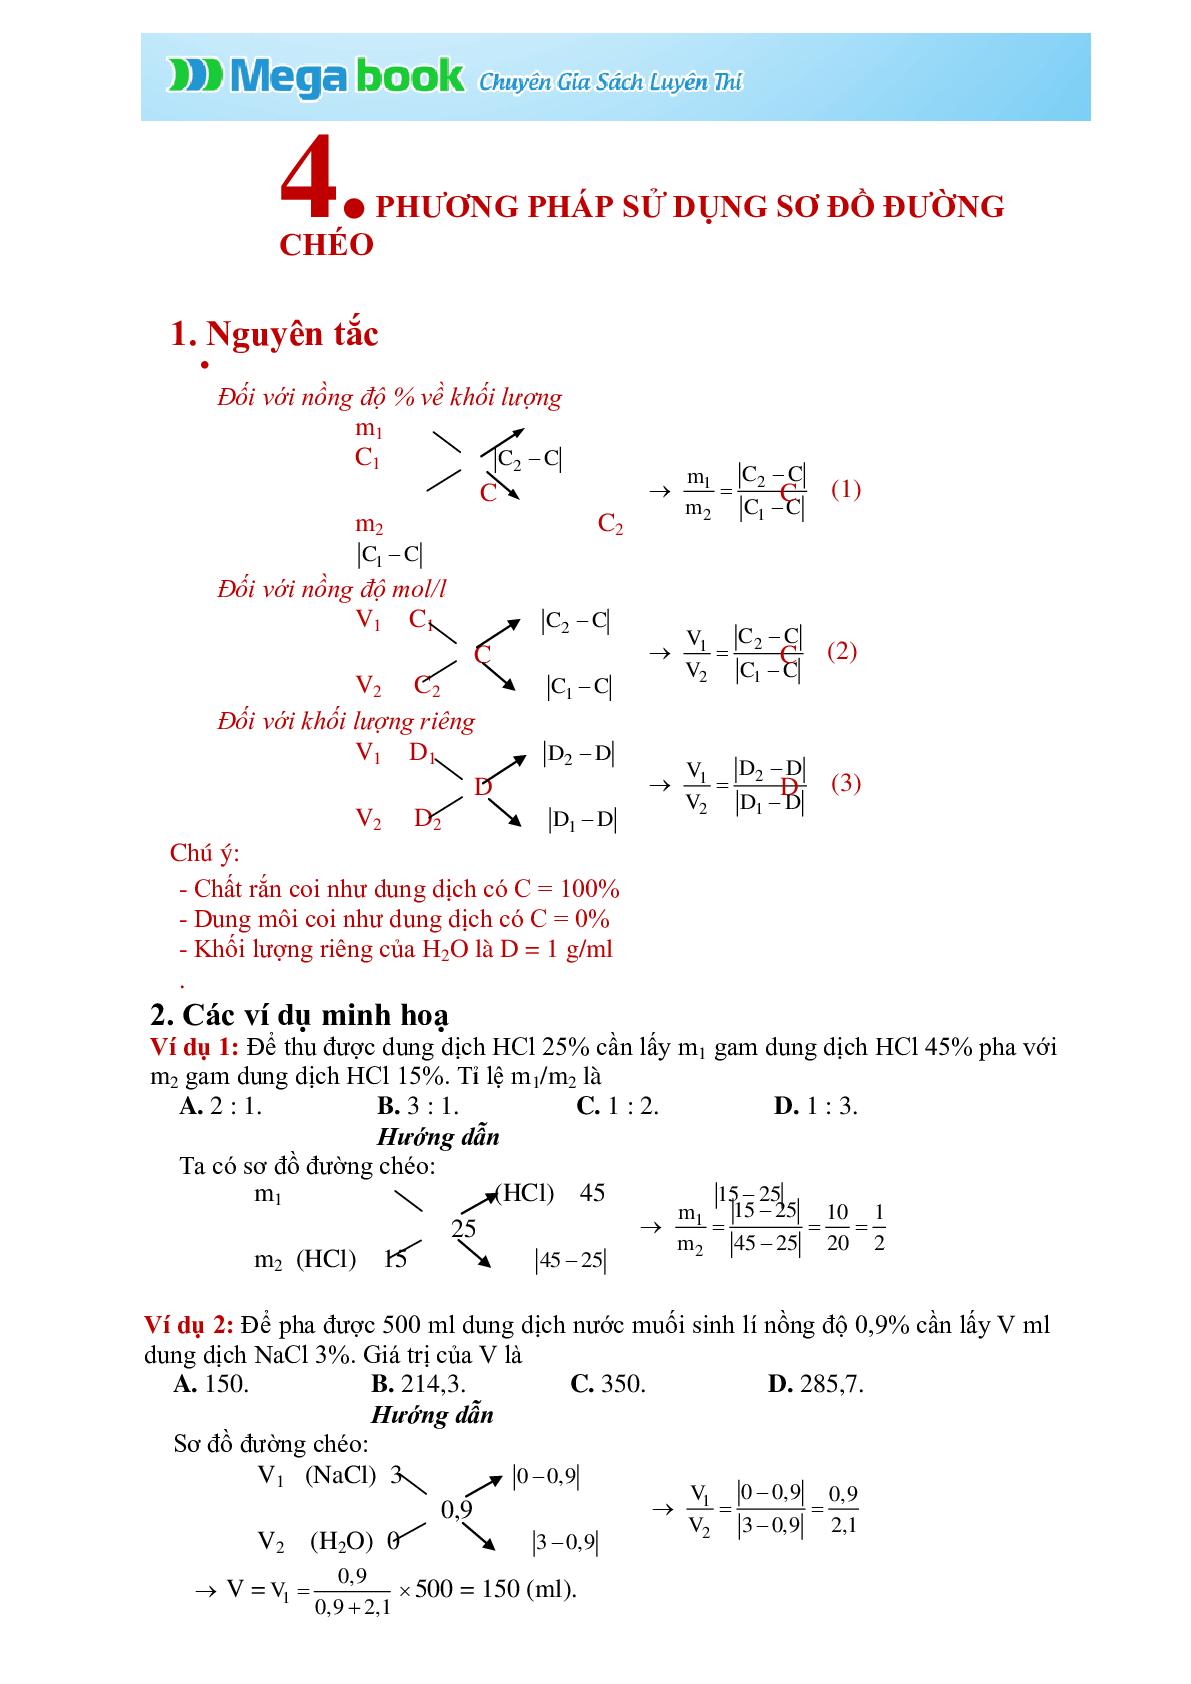 Bài tập về phương pháp đường chéo có đáp án, chọn lọc (trang 1)